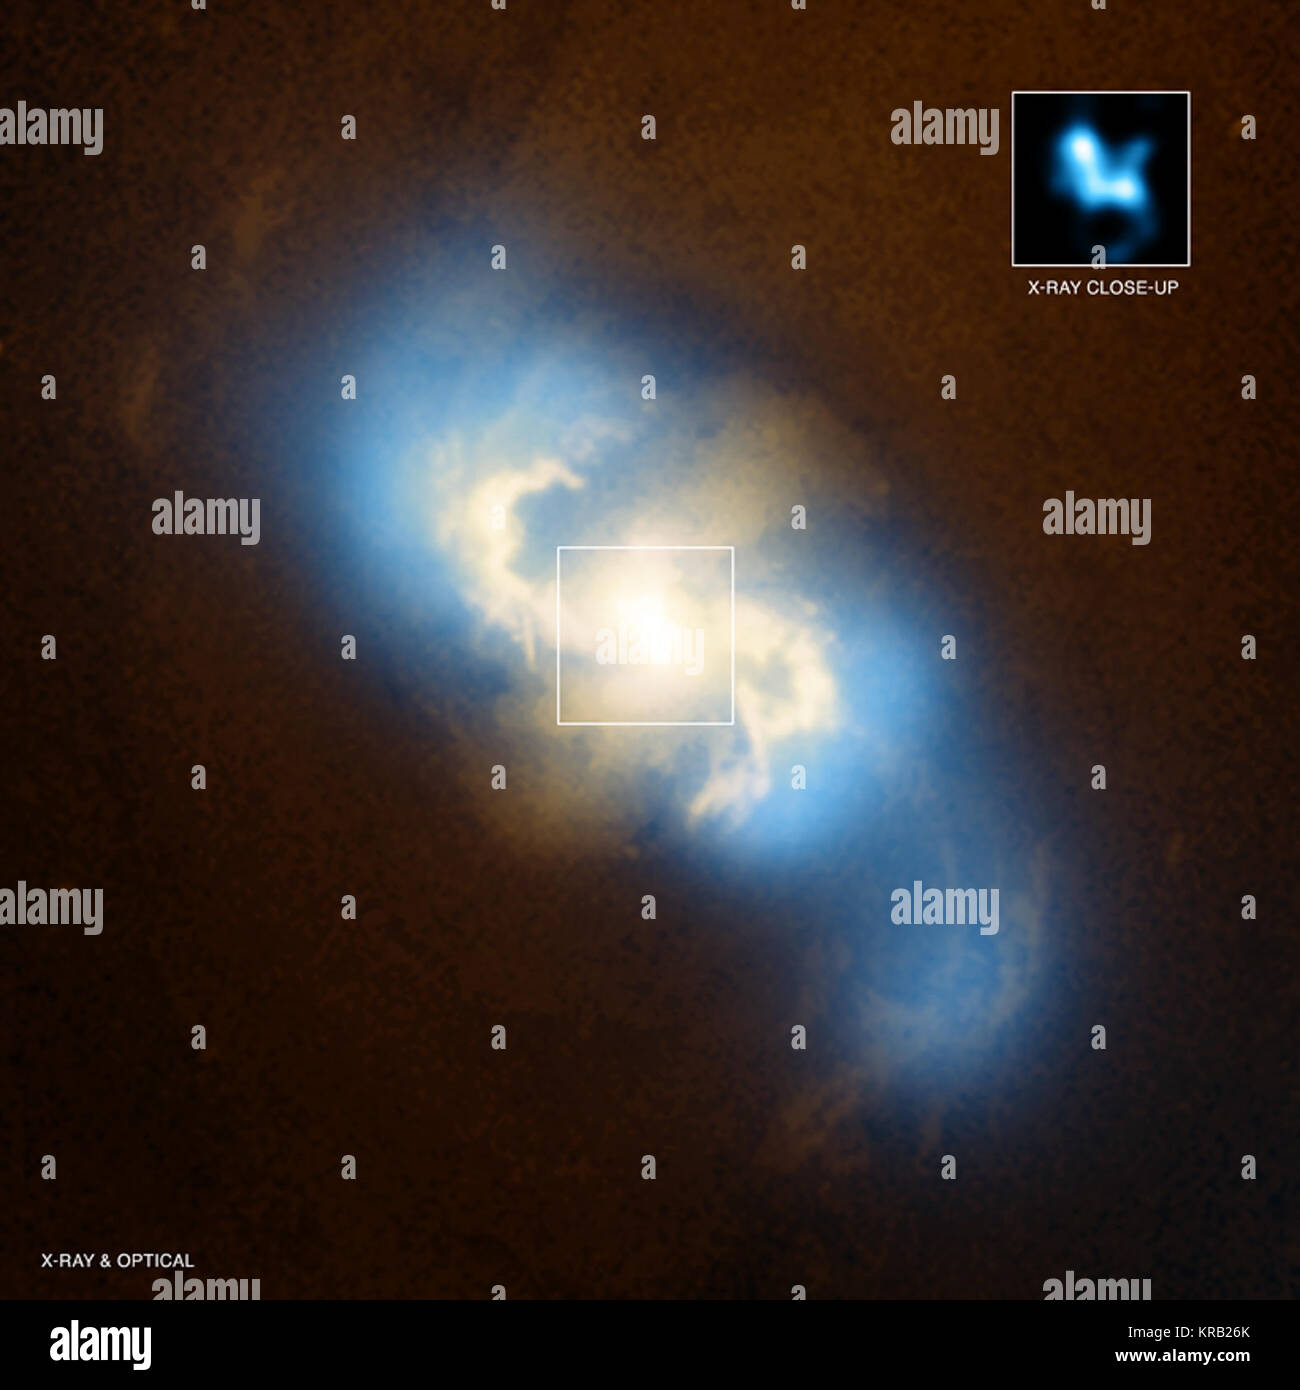 Pour preuve une paire de trous noirs supermassif dans une galaxie spirale a été trouvé dans les données de la NASA's Chandra X-ray Observatory. Cette image principale est un composite de rayons x de Chandra (en bleu) et des données optiques du télescope spatial Hubble (orange et jaune) de la galaxie spirale NGC 3393. Pendant ce temps, l'encadré montre la région centrale de NGC 3993 comme observé juste par Chandra. Deux pics distincts de l'émission des rayons X (environ à 11 heures et 4 heures) peut être clairement vu dans l'encadré. Ces deux sources sont les trous noirs qui sont en pleine croissance, la génération de l'émission des rayons X que le gaz falls Banque D'Images